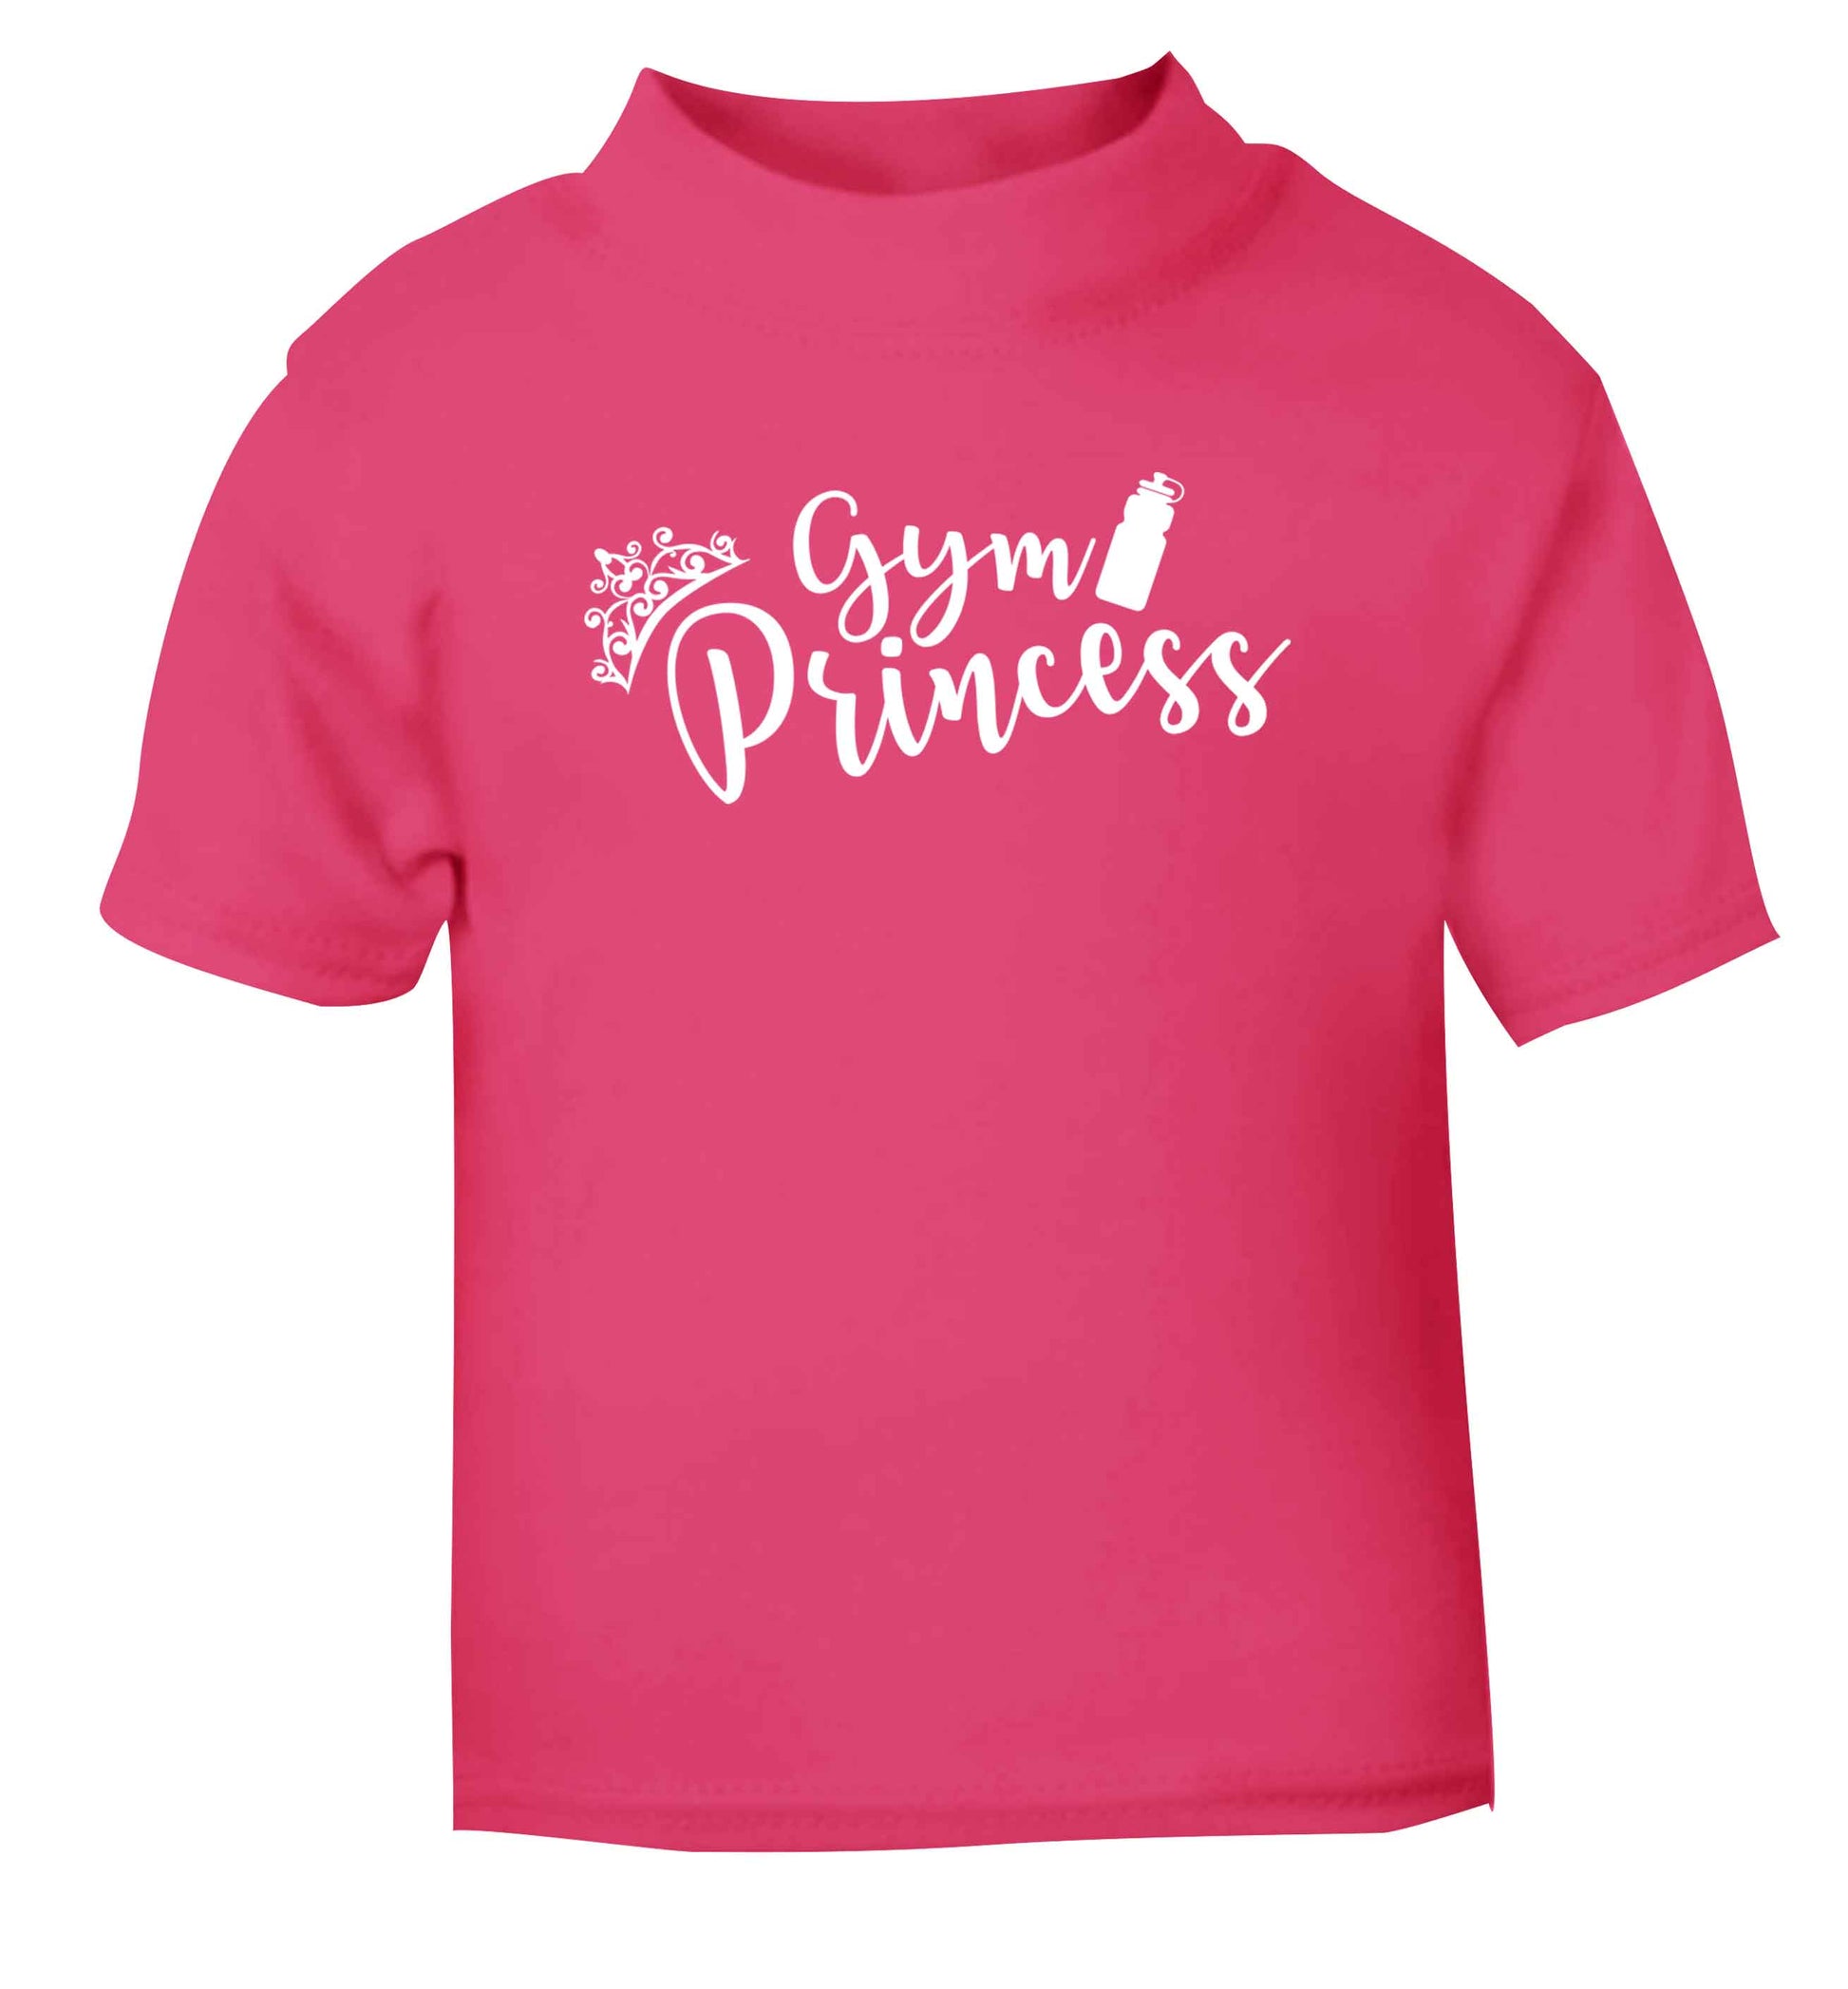 Gym princess pink Baby Toddler Tshirt 2 Years